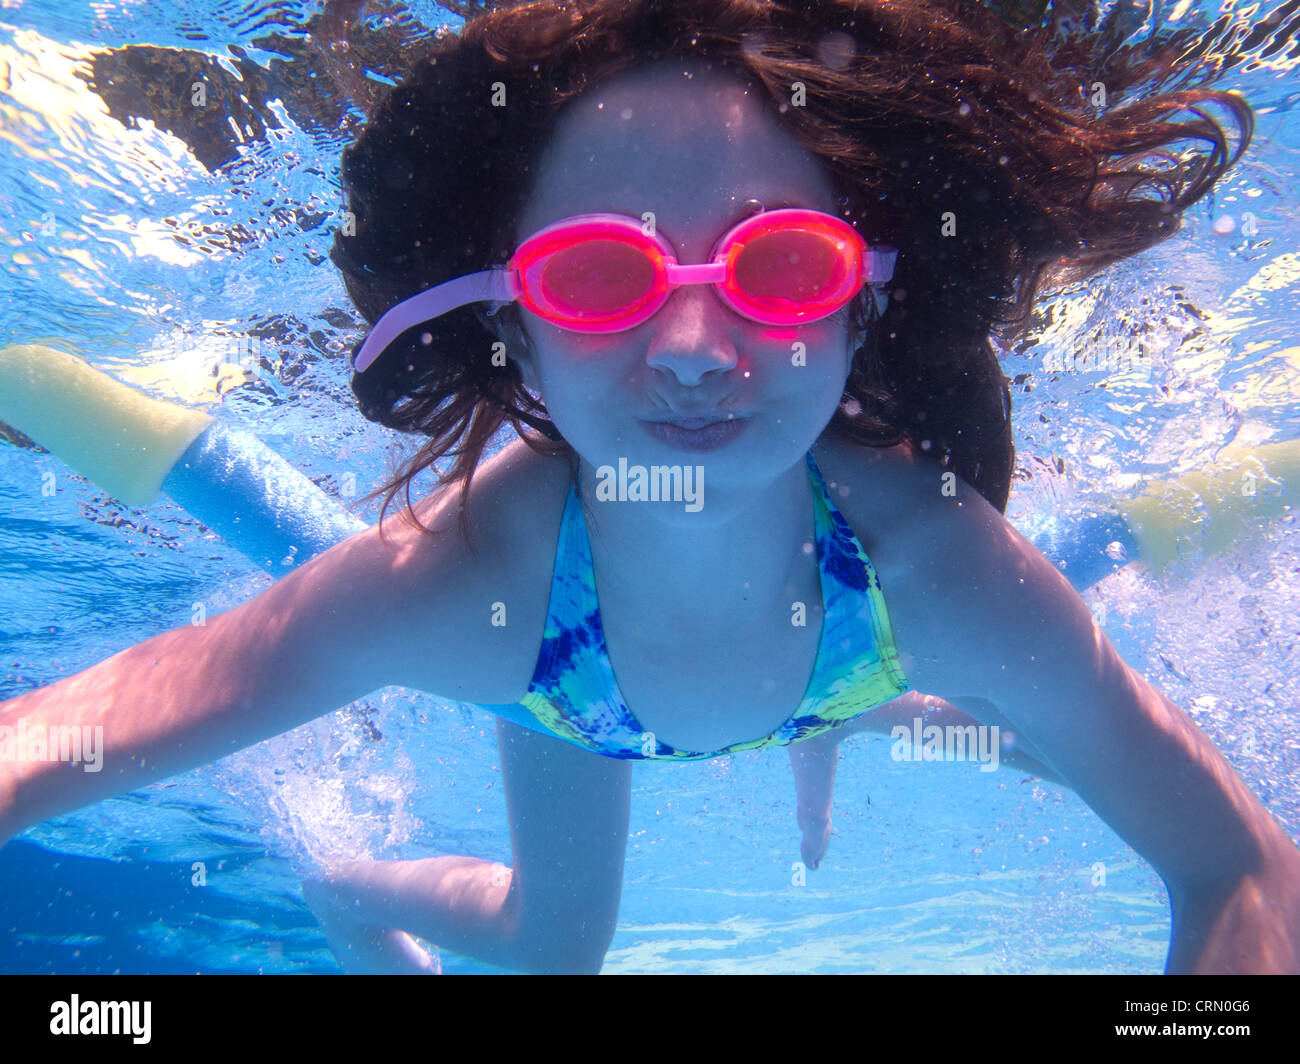 Des images d'enfants jouant dans une piscine de prises sous l'eau. Banque D'Images